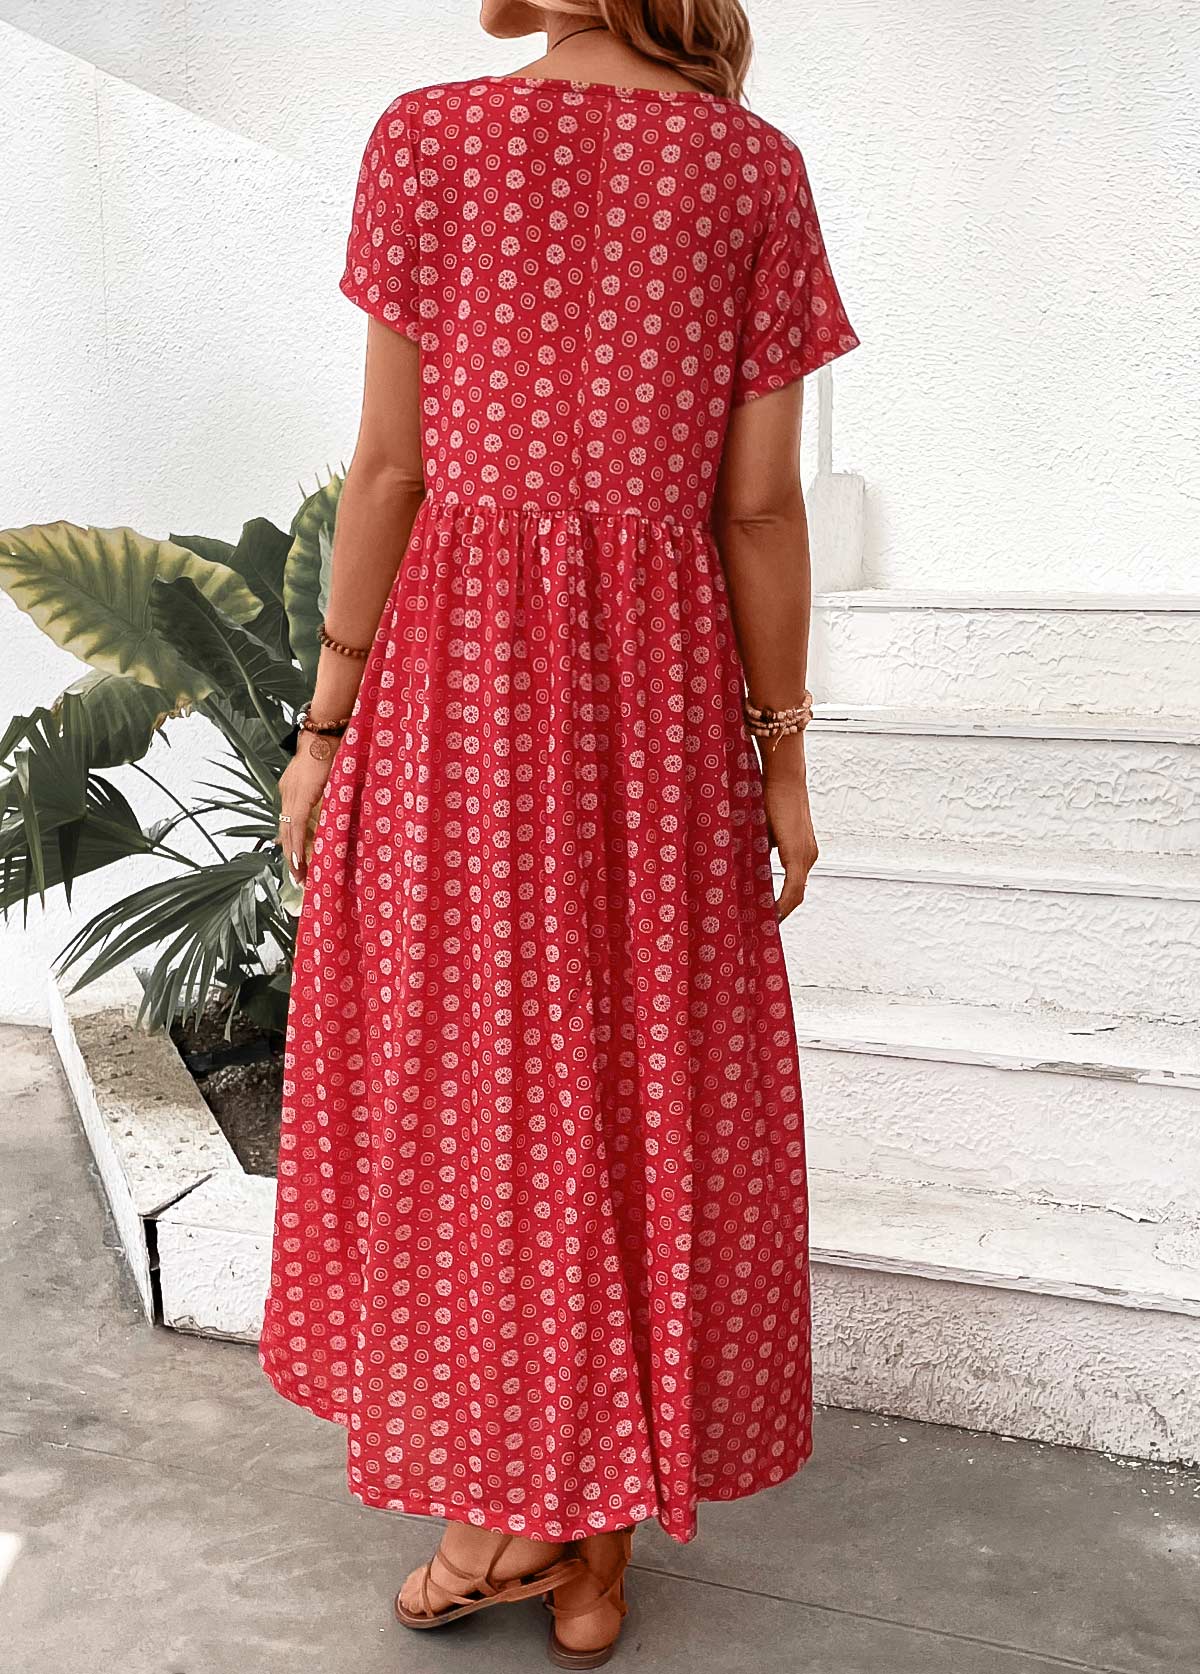 Geometric Print Pocket Red Maxi A Line Dress